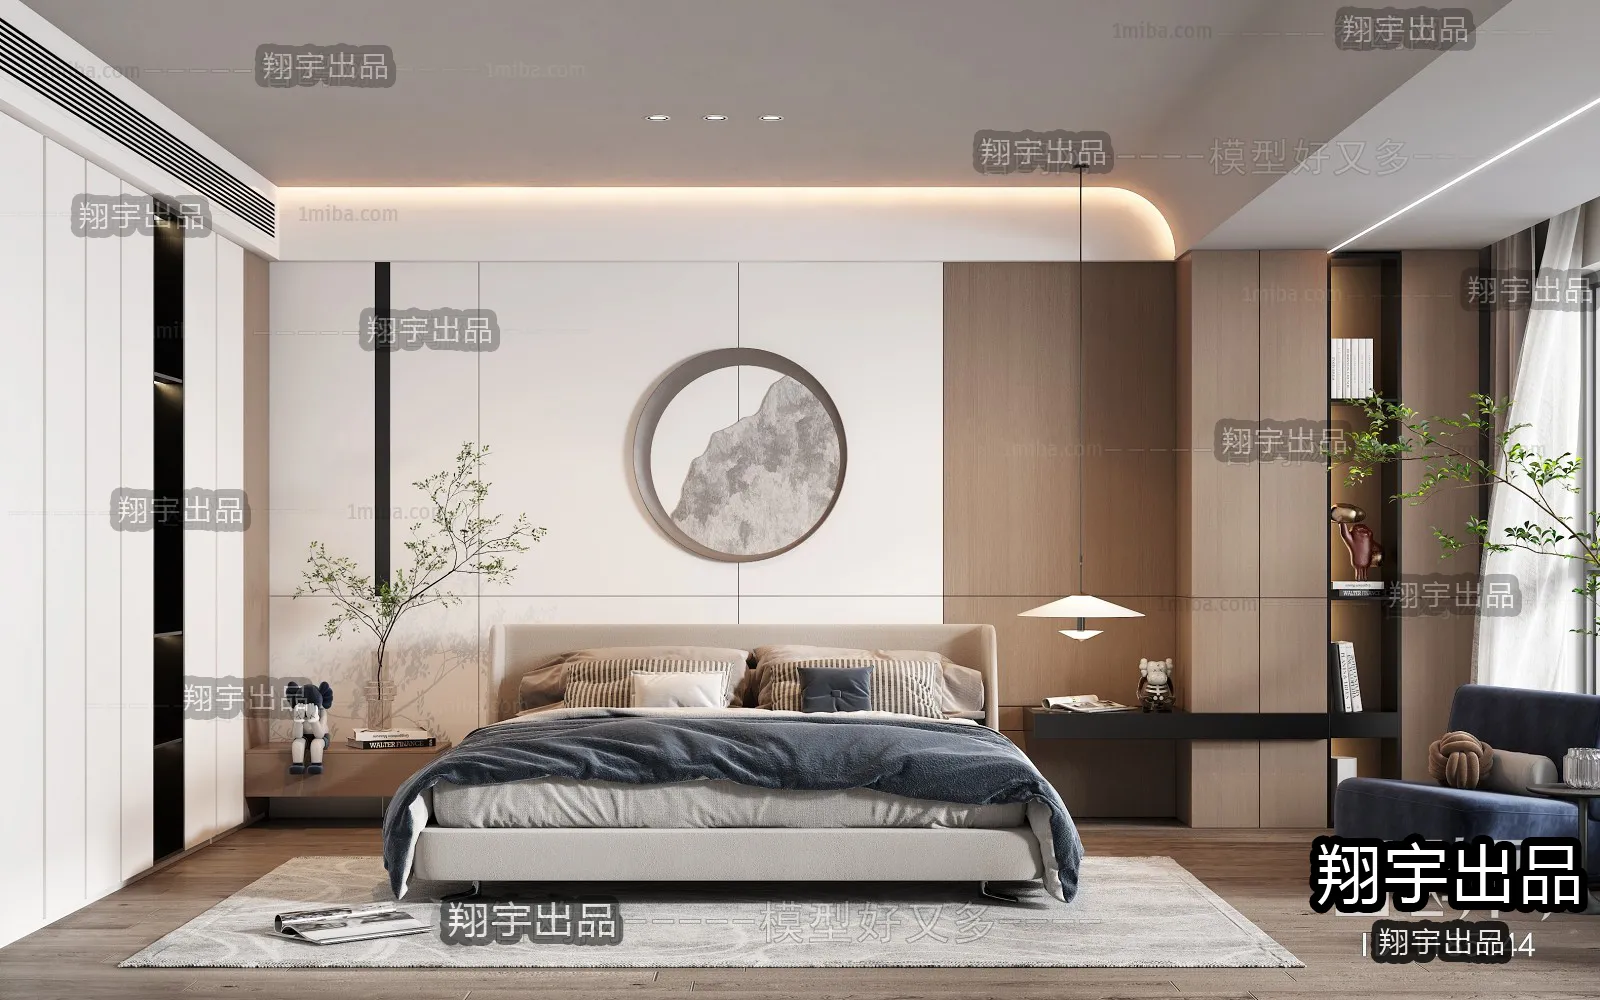 Bedroom – Modern Interior Design – 3D Models – 044